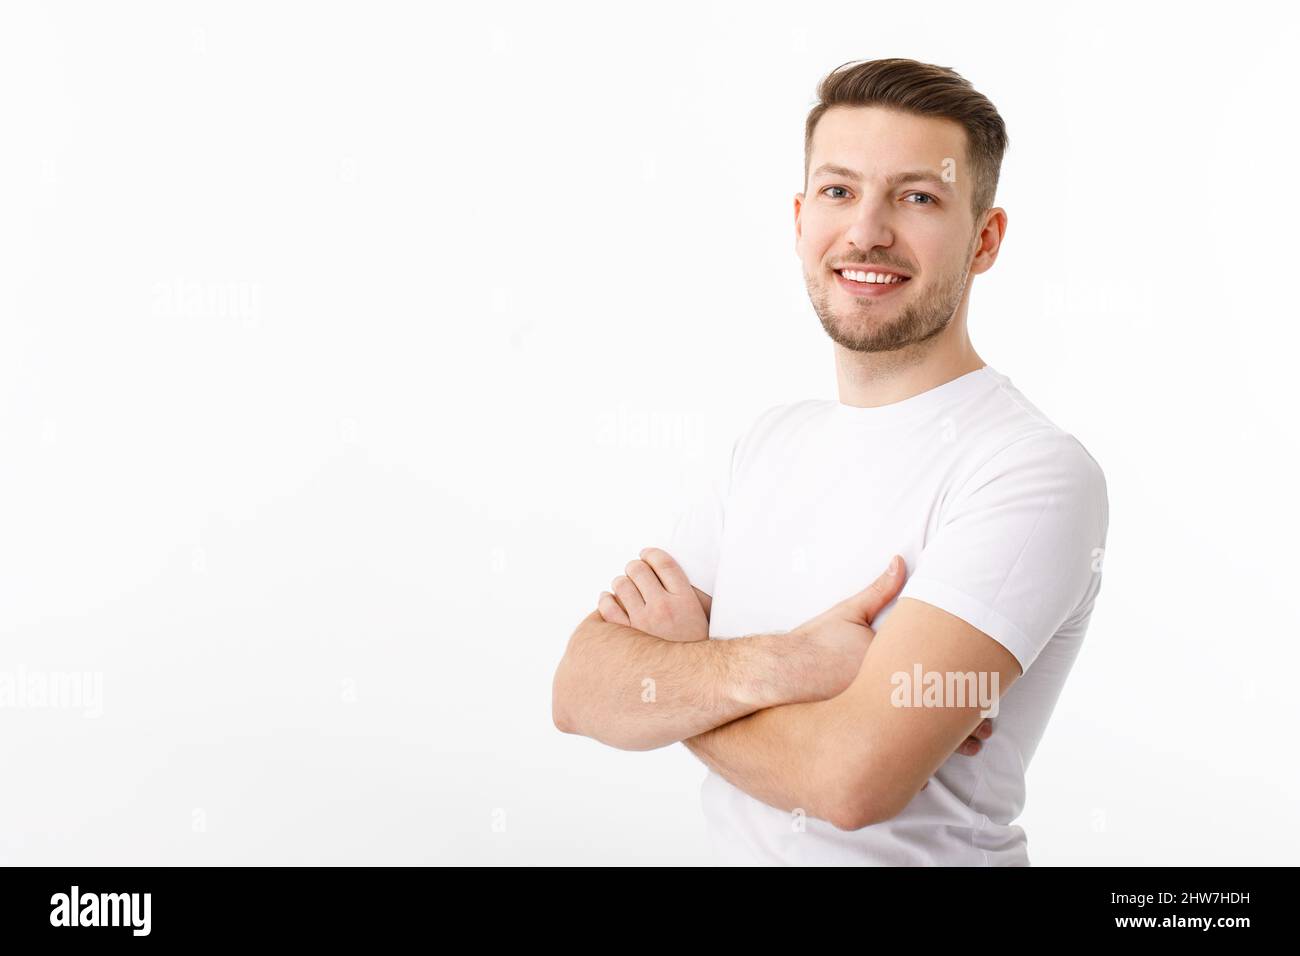 Ritratto di un giovane allegro in una T-shirt bianca su sfondo bianco. Il ragazzo è in piedi guardando la macchina fotografica e sorridendo. Foto Stock